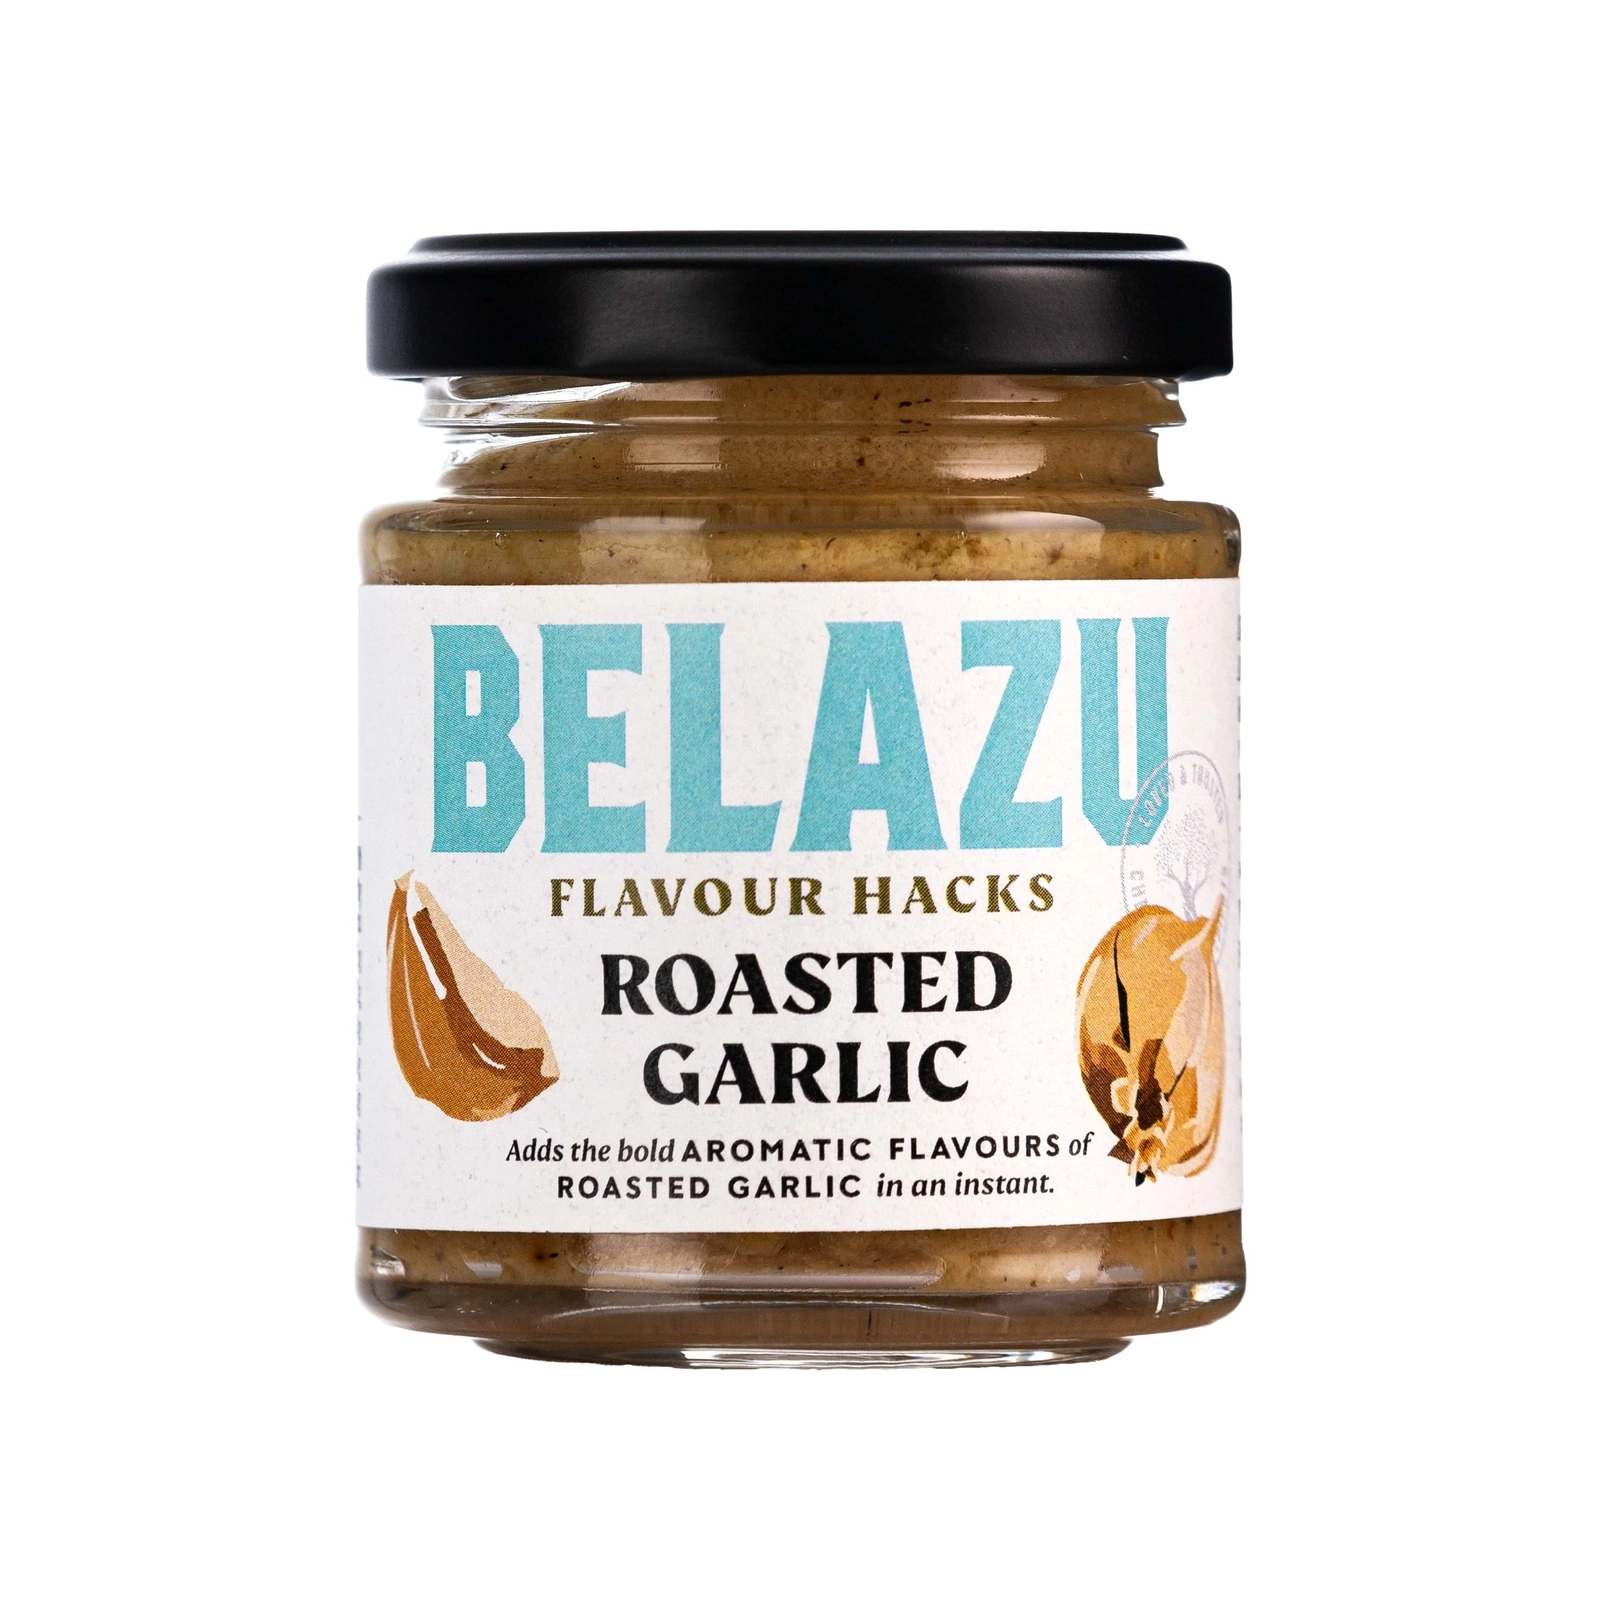 BELAZU Flavour Hack Roasted Garlic (130g)